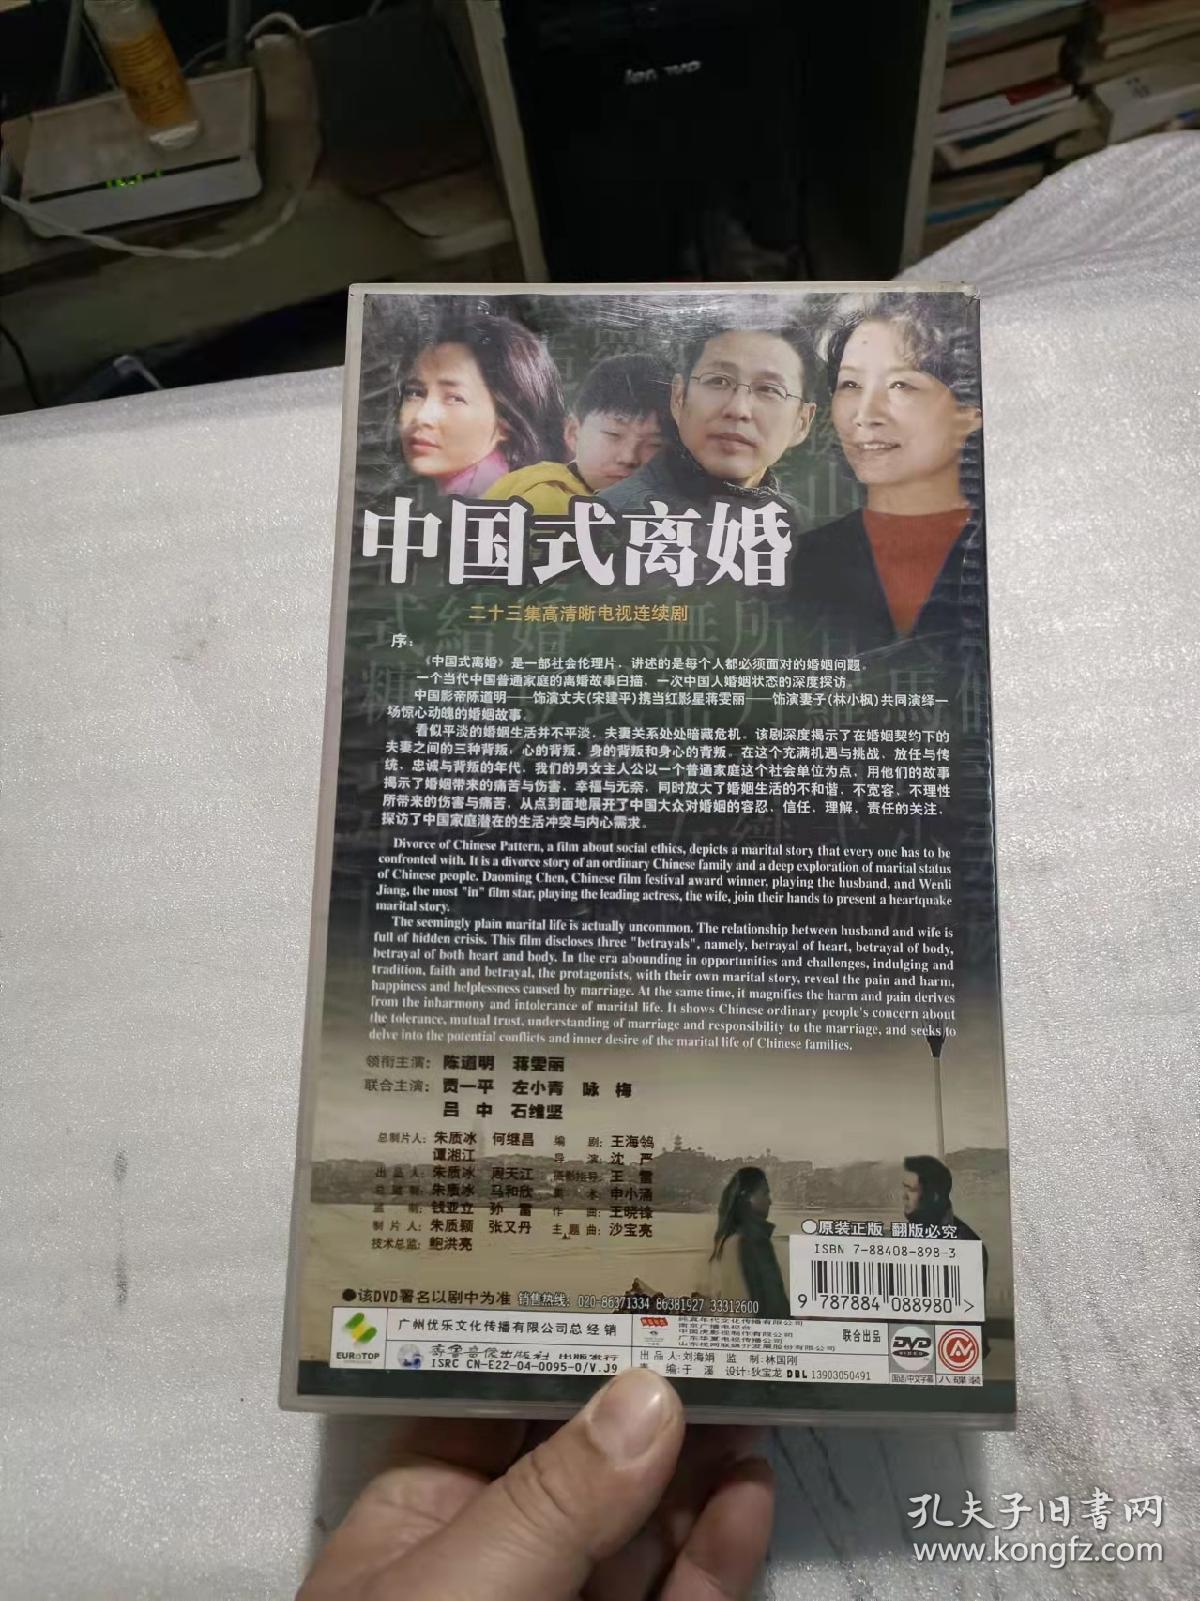 中国式离婚 DVD  8碟装